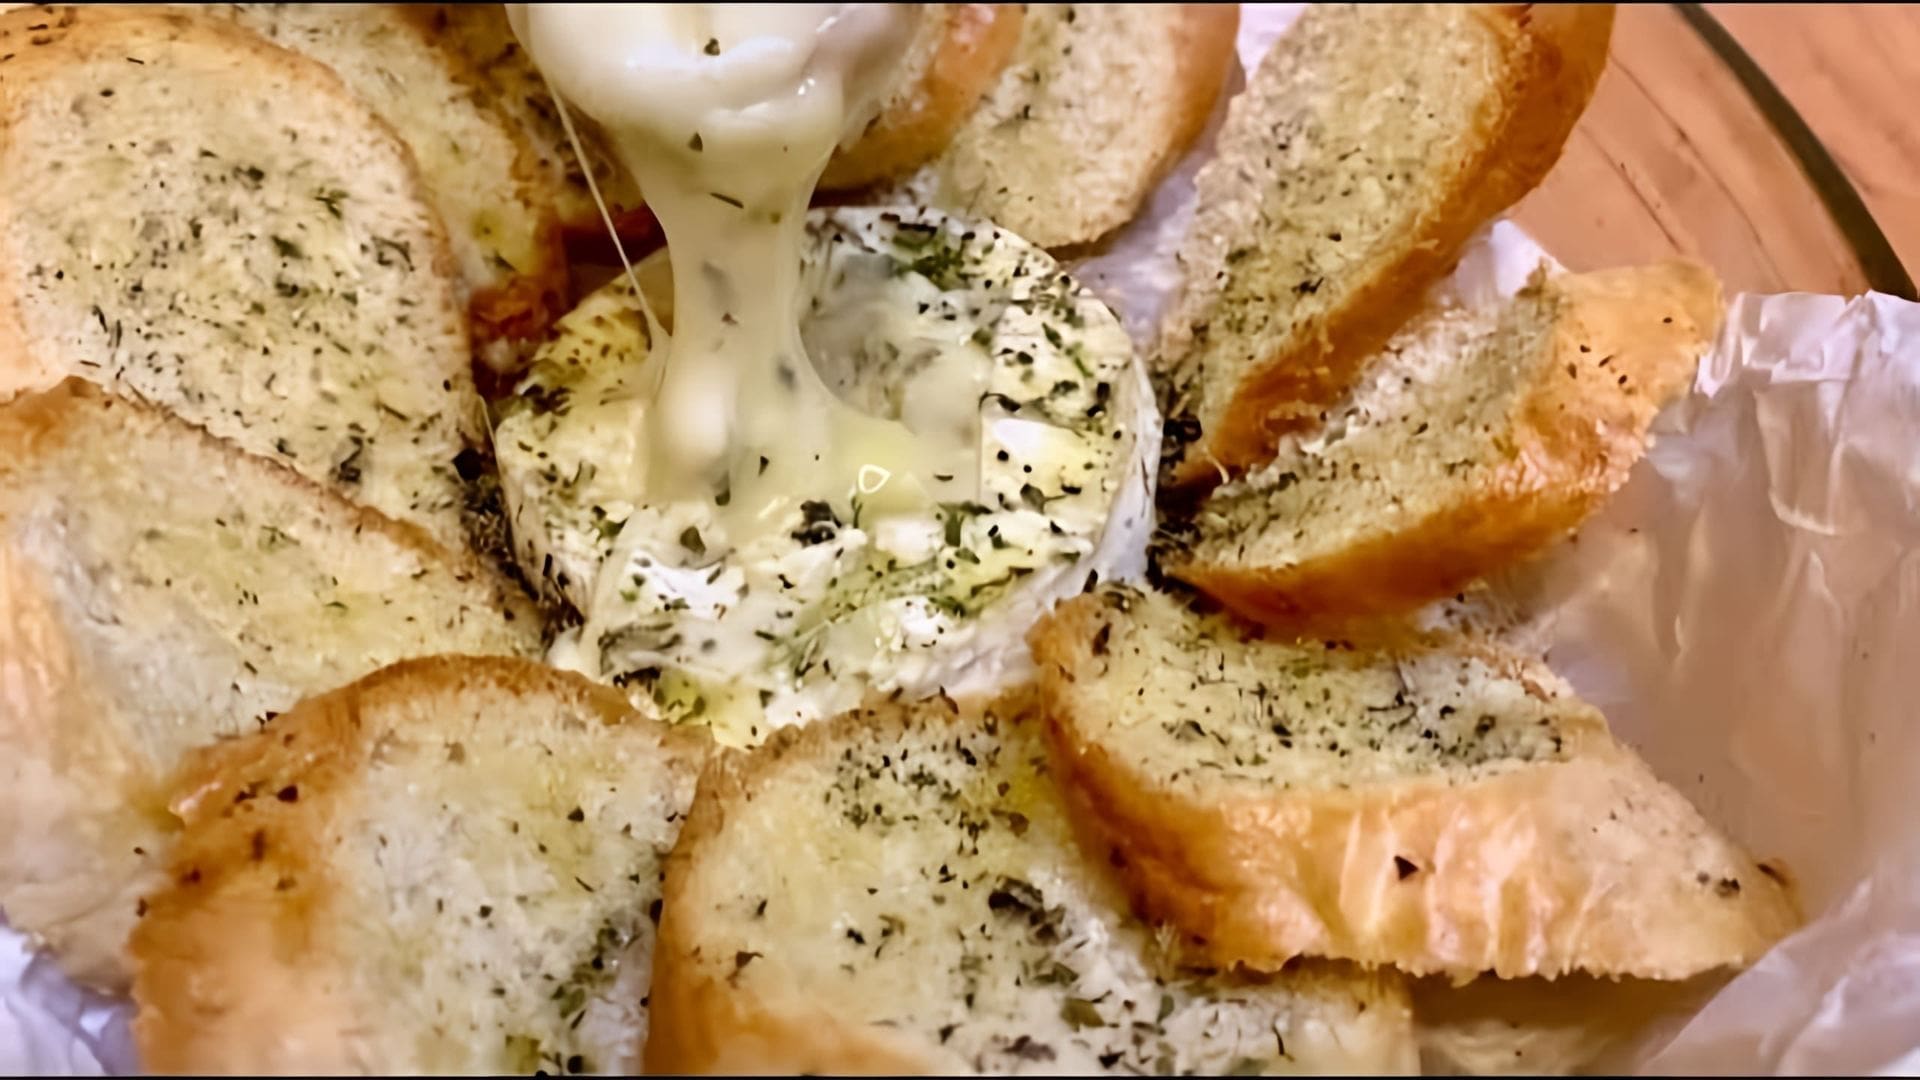 В этом видео демонстрируется рецепт приготовления запеченного сыра Камамбер в духовке с чесноком, ароматными травами и хрустящим багетом